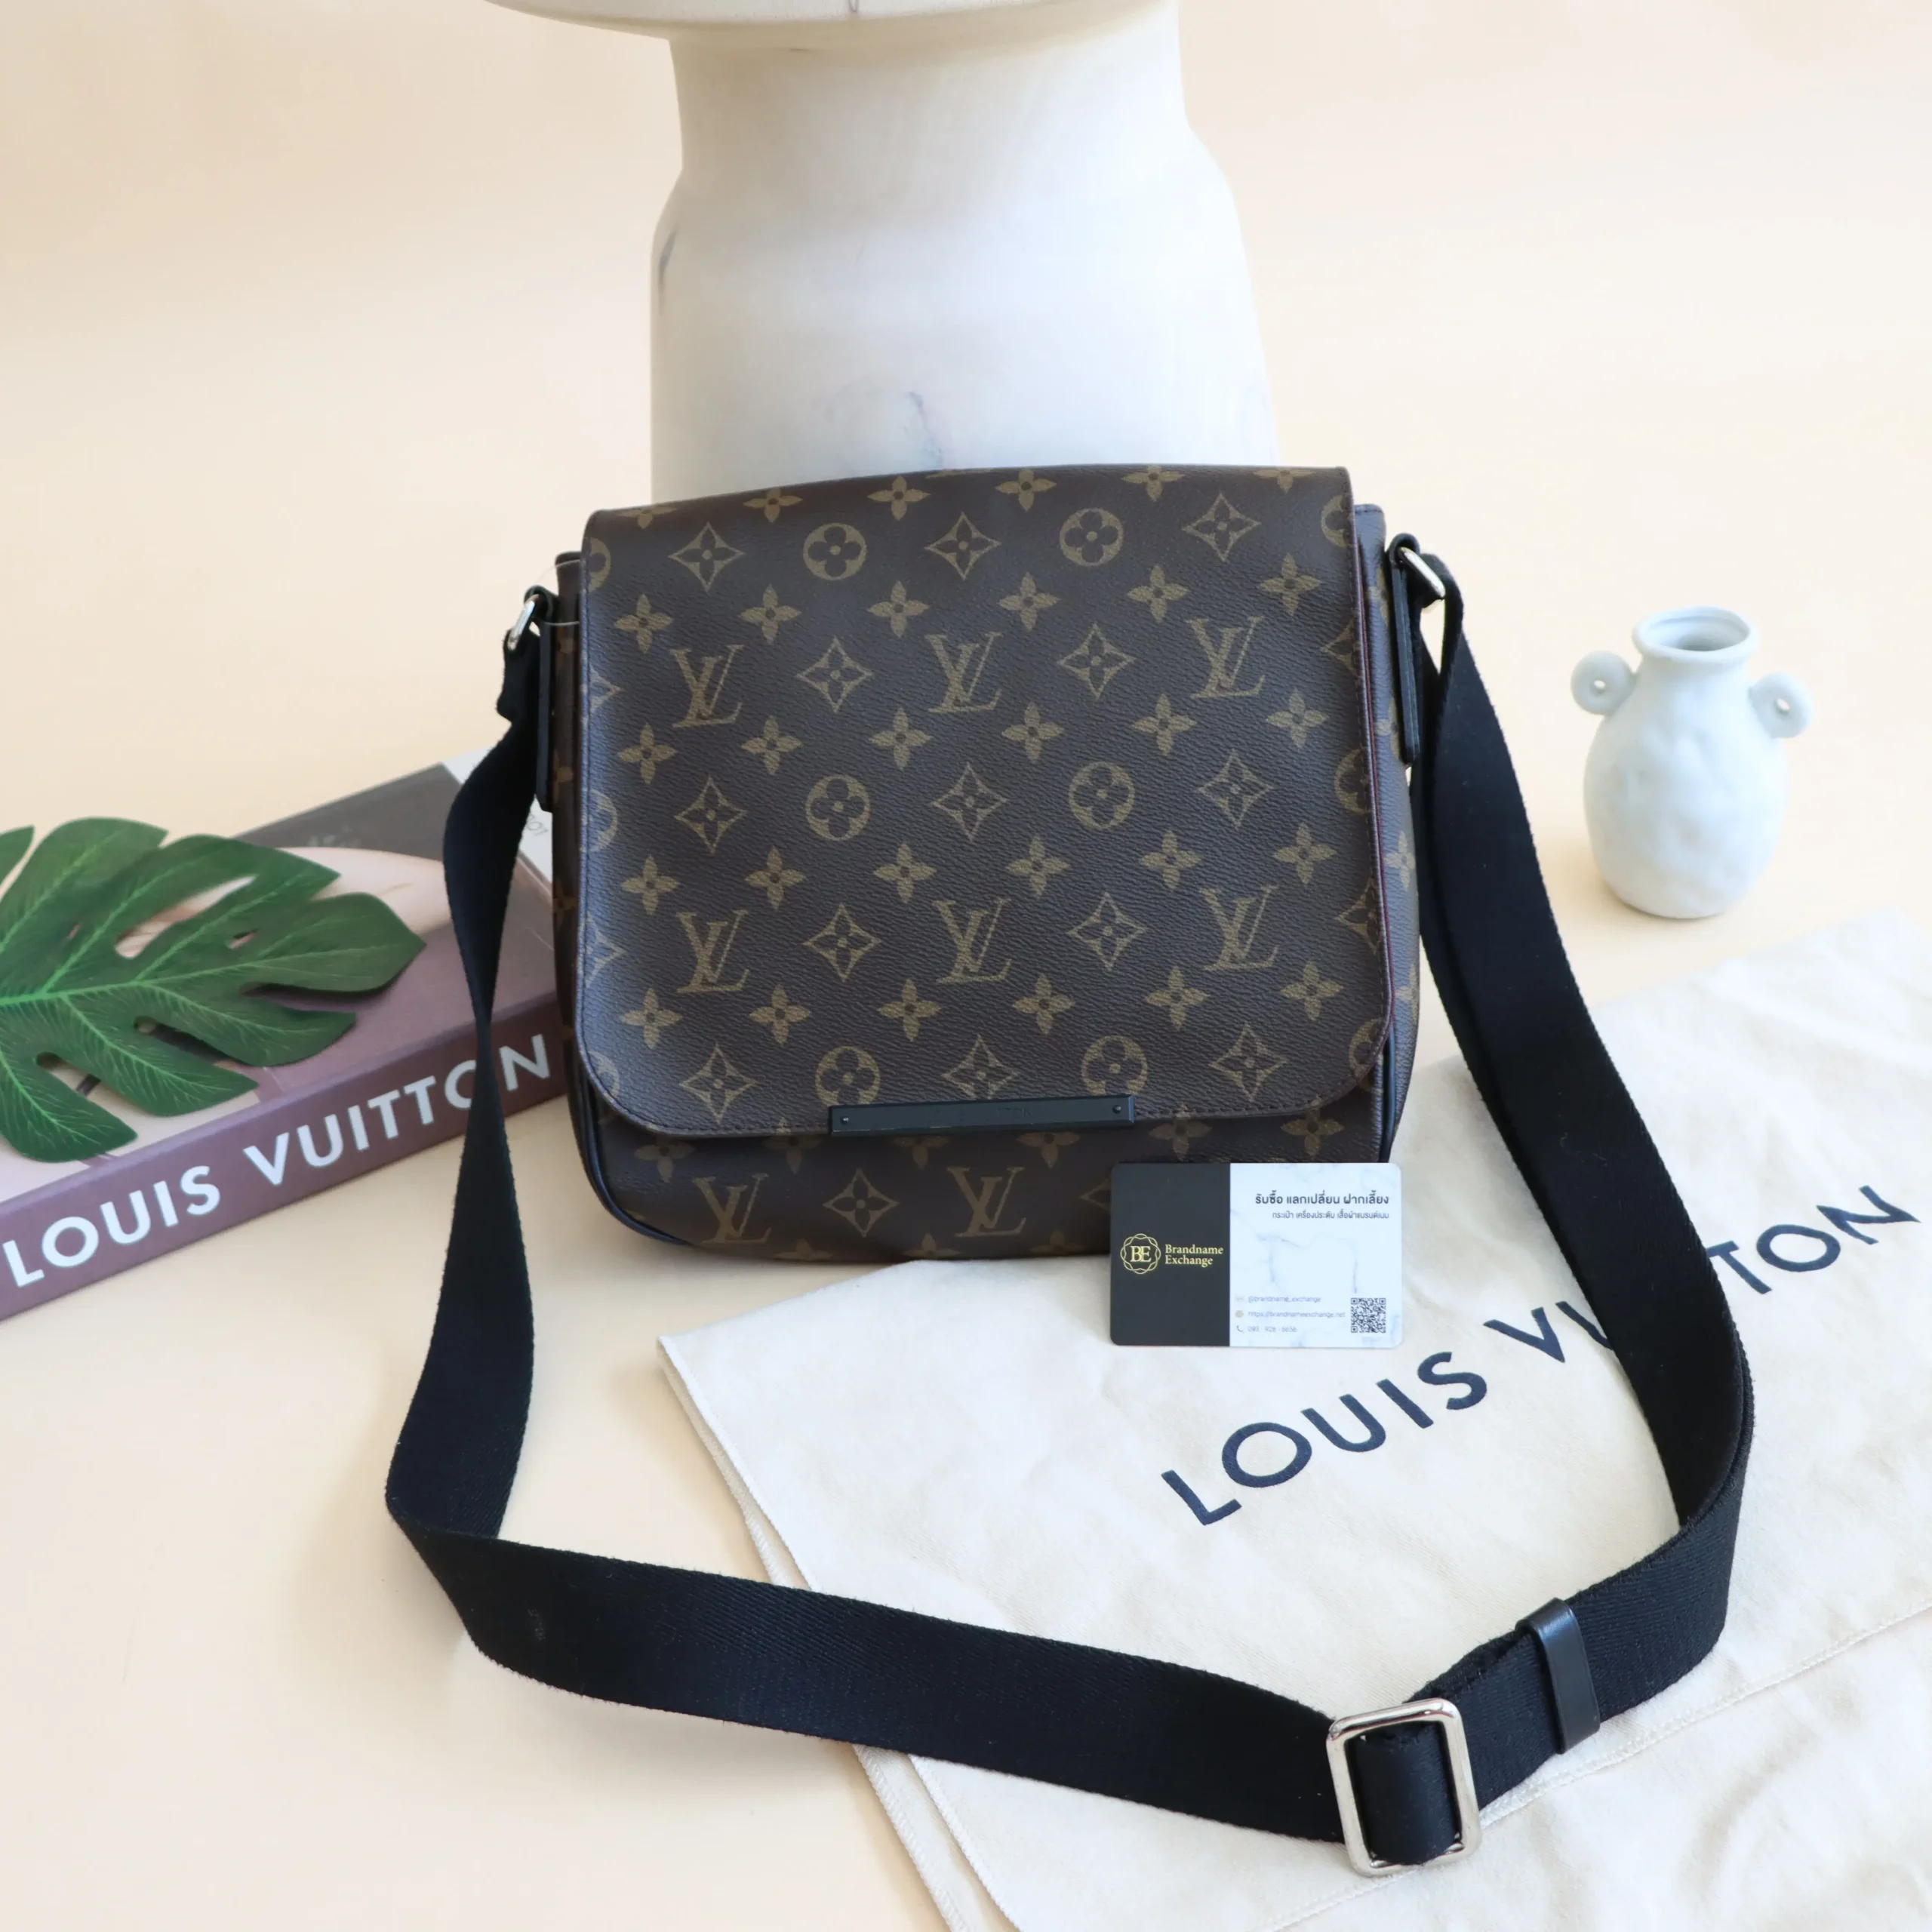 ร้านรับซื้อ-ขายกระเป๋า Louis vuitton (หลุยส์) มือสองแท้